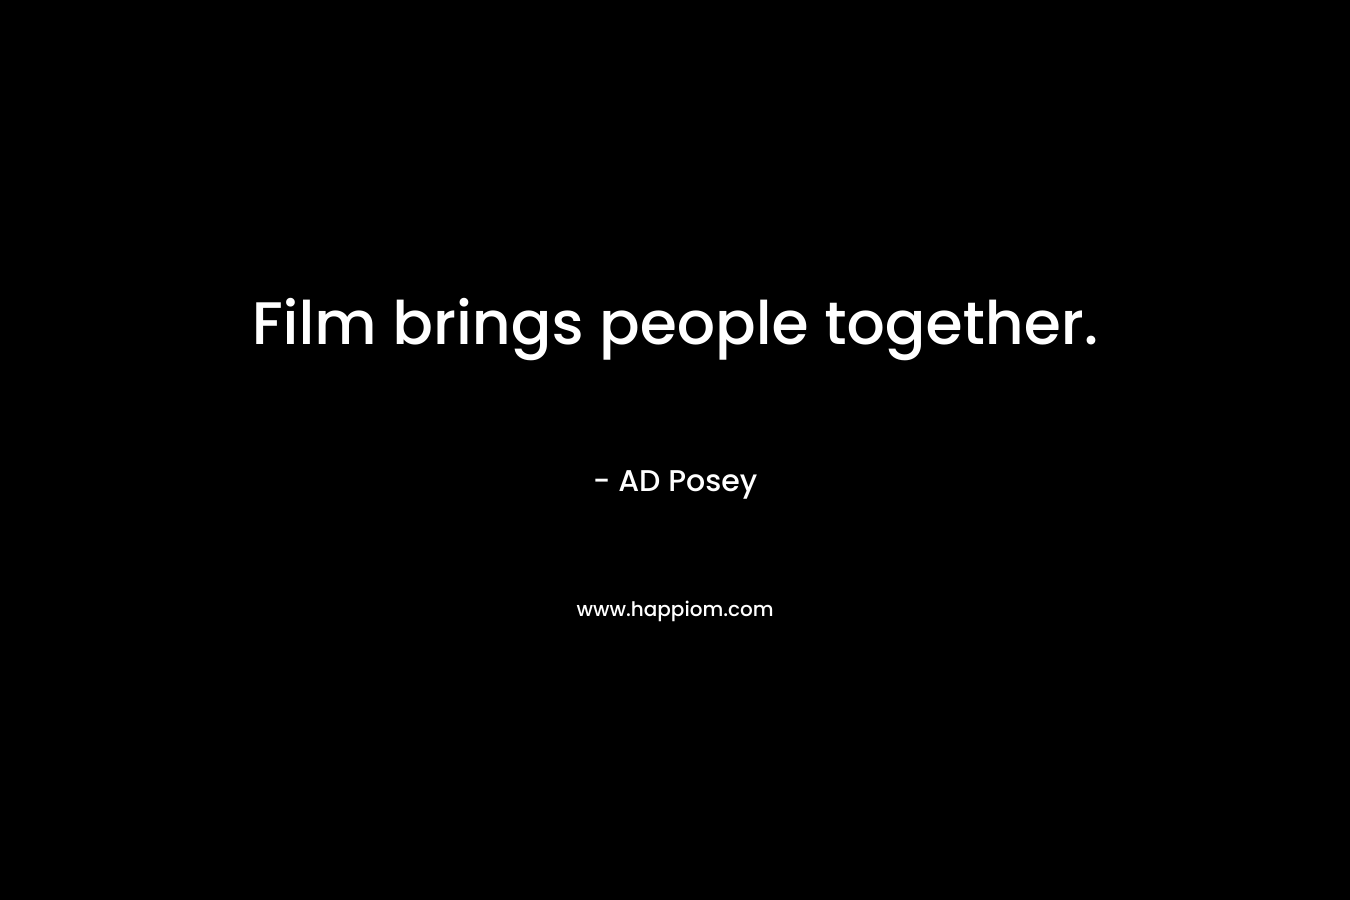 Film brings people together.